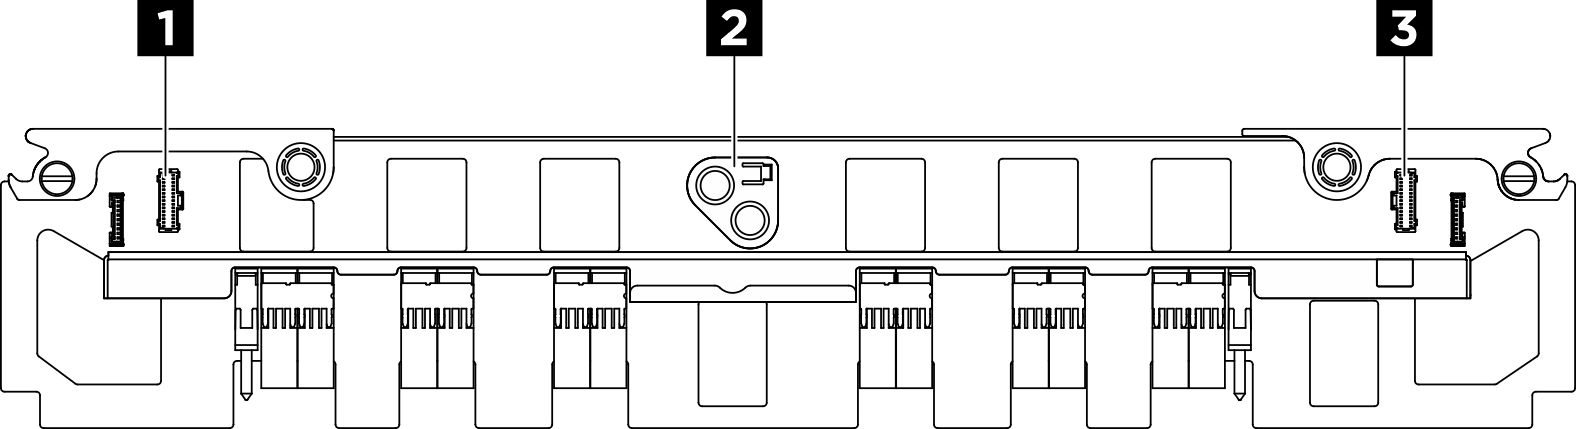 Placa de interposição de PSU connectors